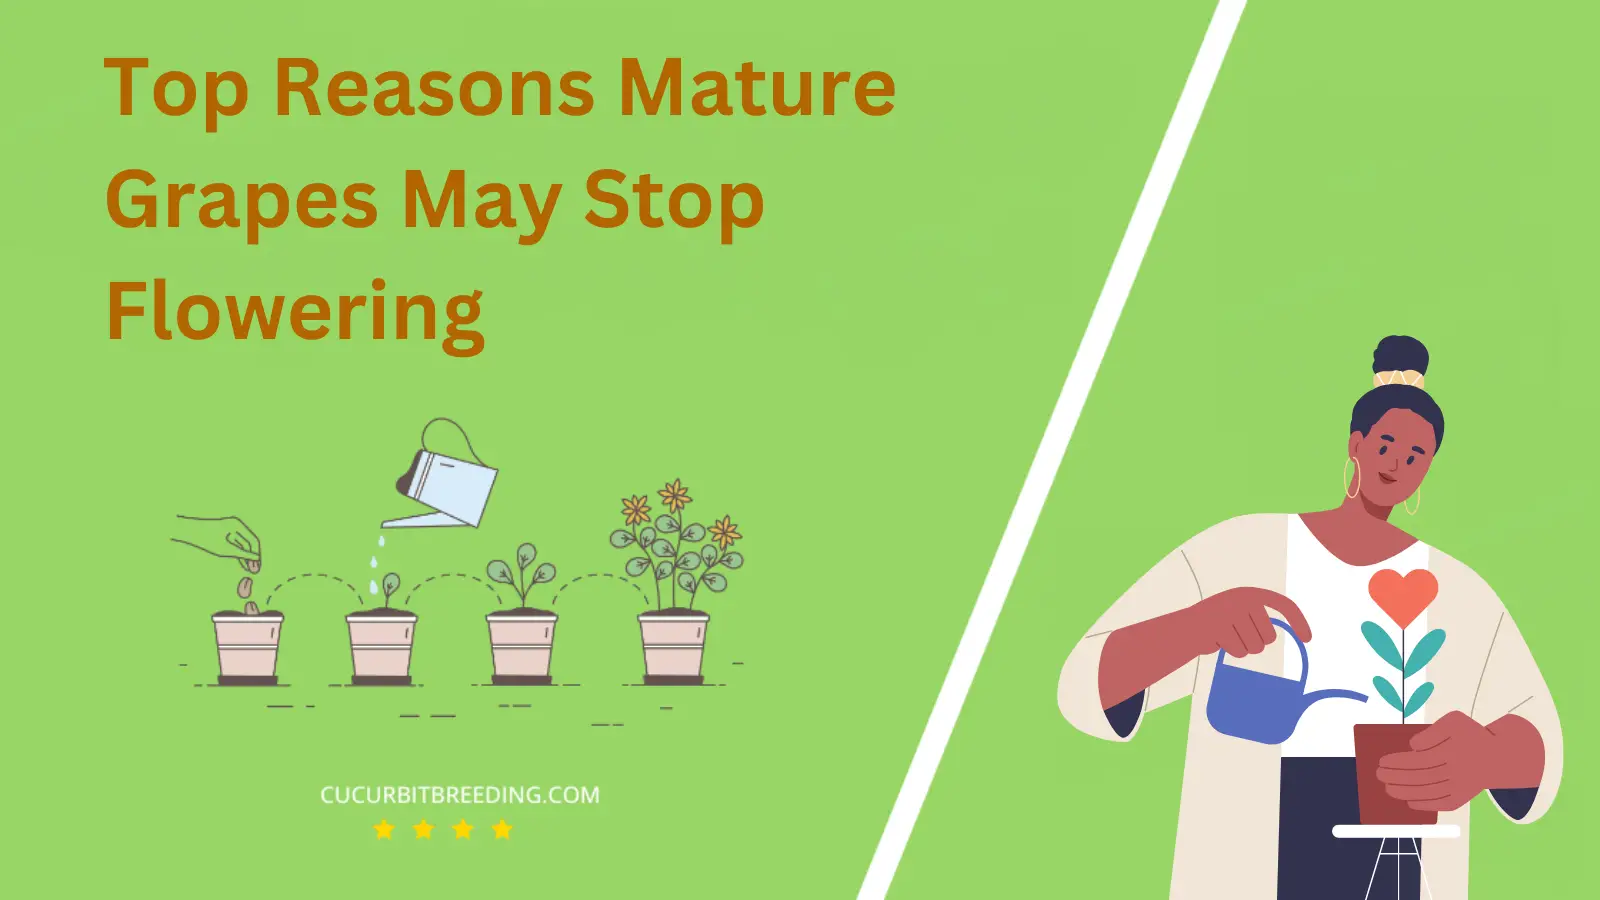 Top Reasons Mature Grapes May Stop Flowering